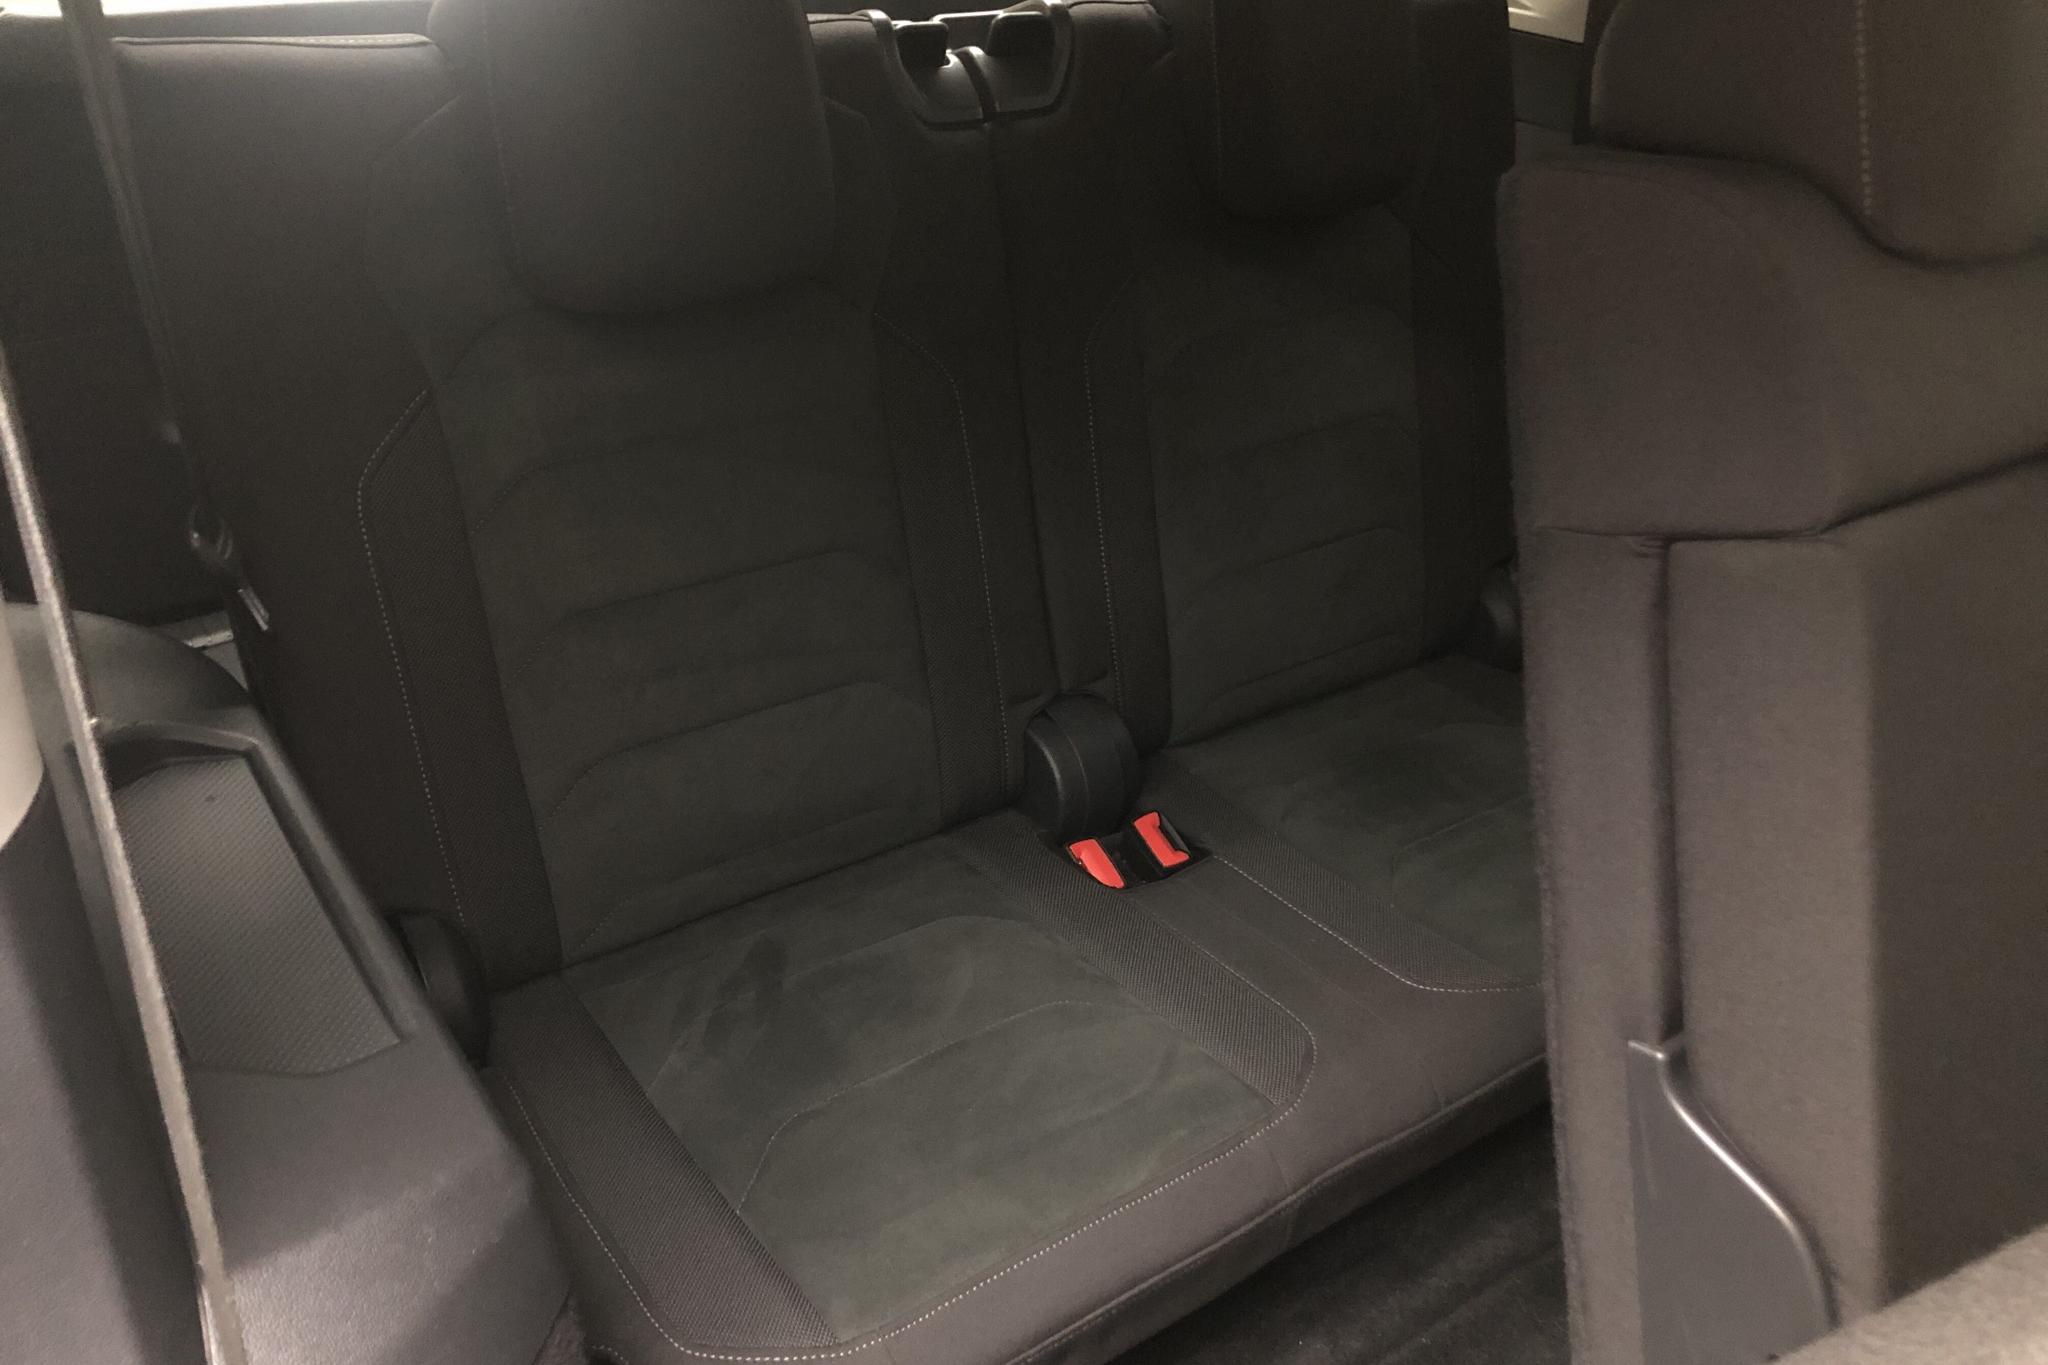 VW Tiguan Allspace 2.0 TDI 4MOTION (190hk) - 116 500 km - Automatic - white - 2019